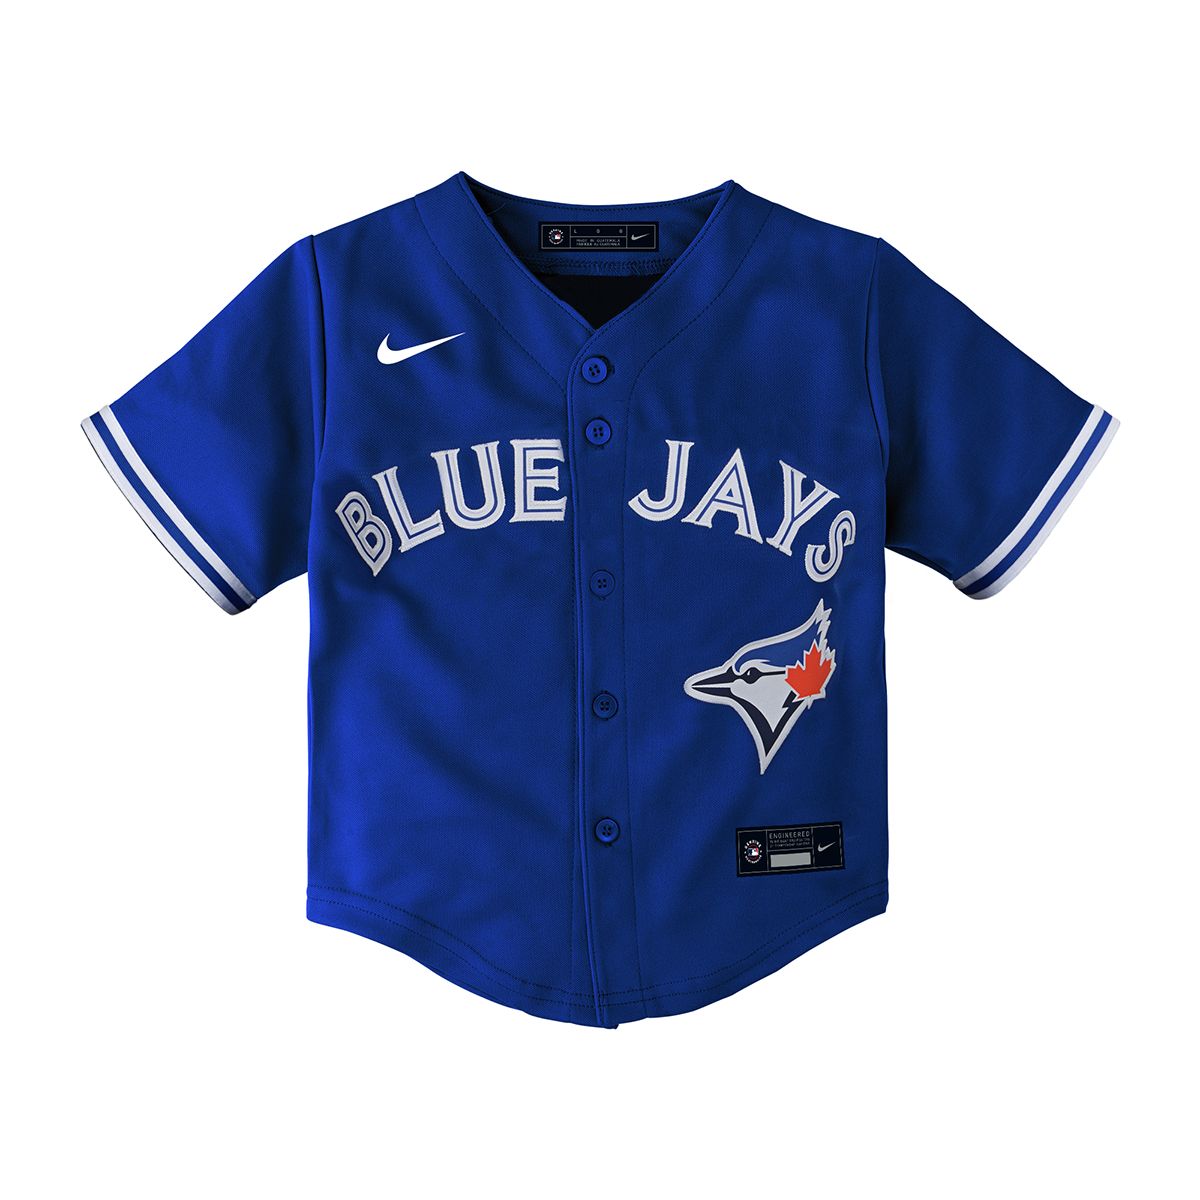 Vintage Ravens Knit Atlanta Braves 4 MLB Jersey Navy Blue XL Canada Sewn   eBay